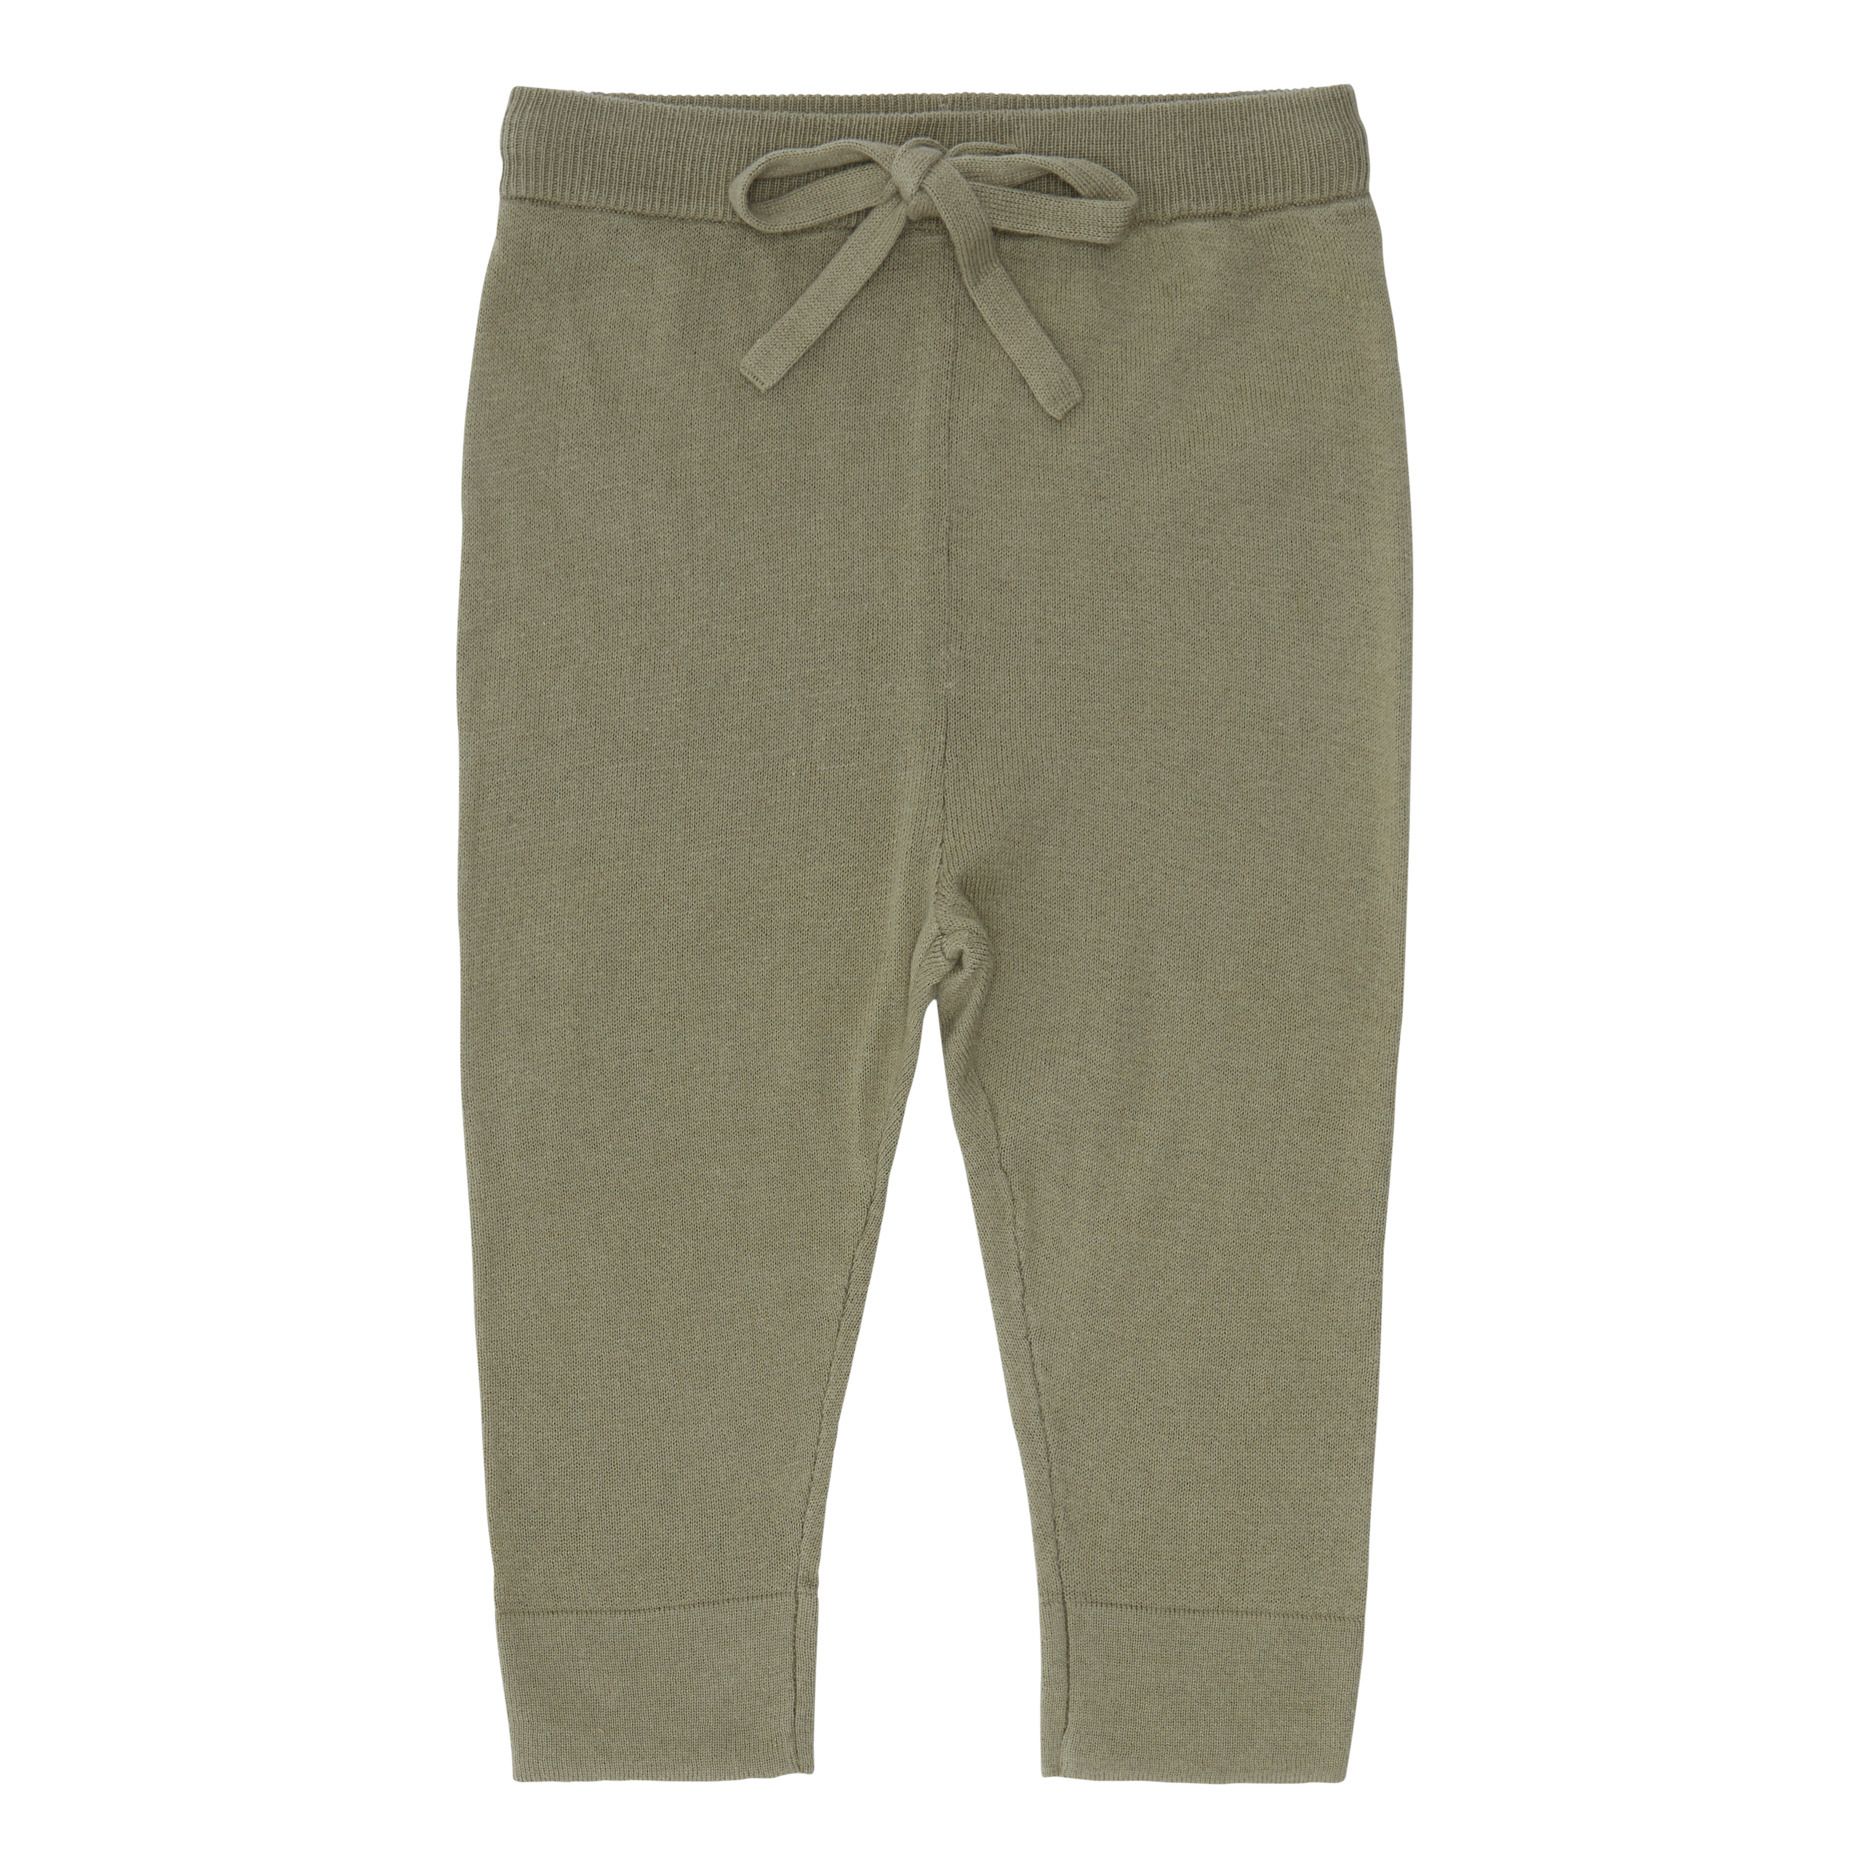 FUB - Pantalon Uni Coton Bio - Fille - Vert kaki